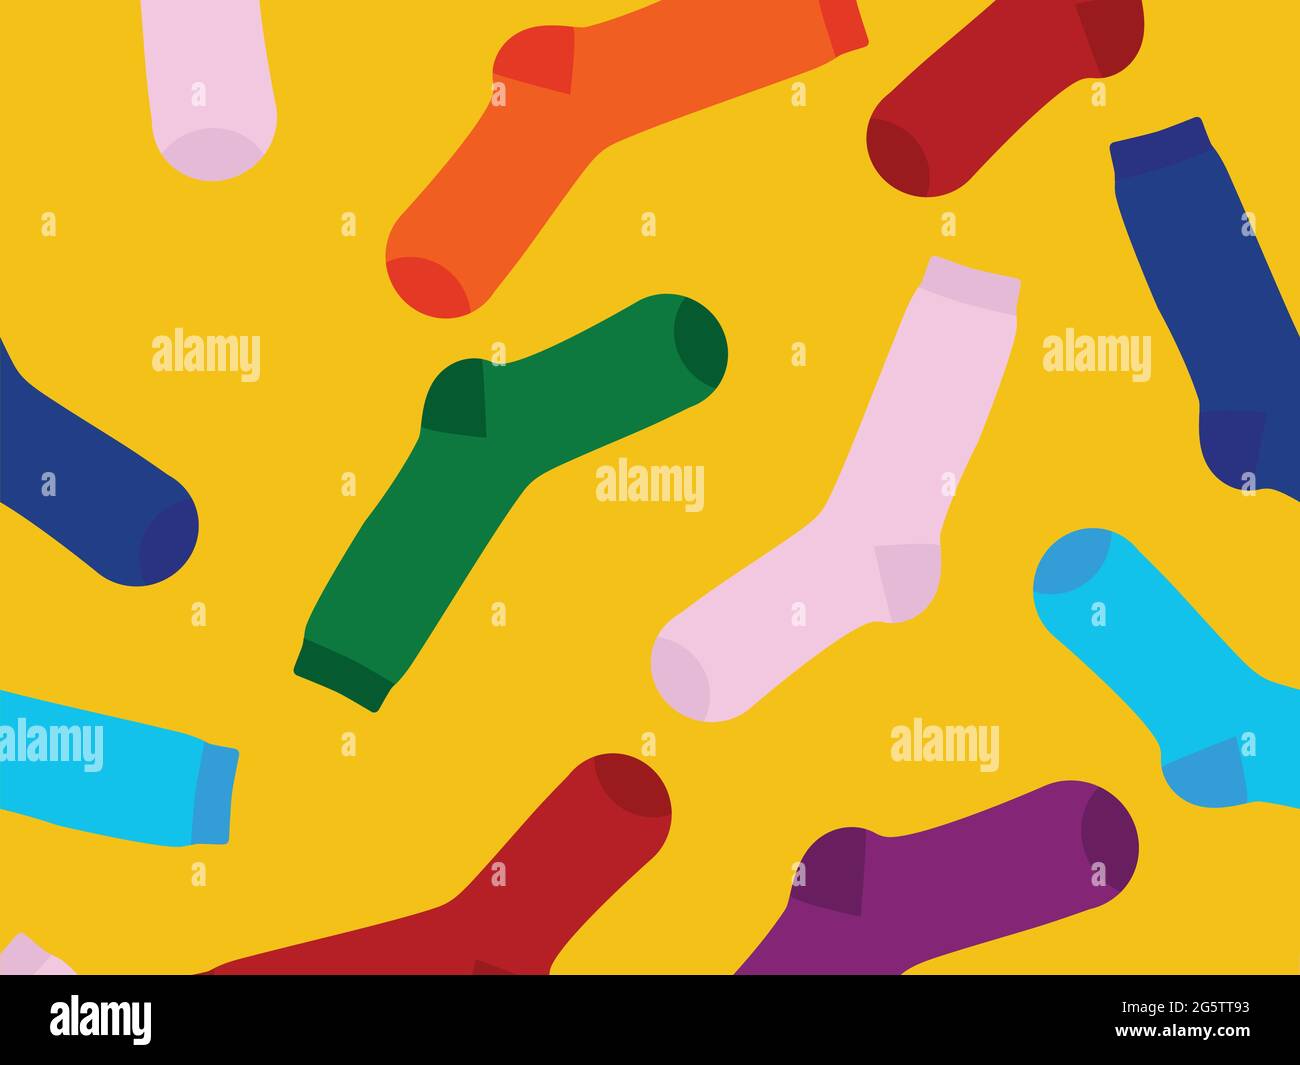 Mehrfarbige Socken auf gelbem Hintergrund. Blick von oben. Viele verschiedene Socken für die kalte Jahreszeit. Socken sind auf einem hellen Hintergrund verstreut. Stock Vektor